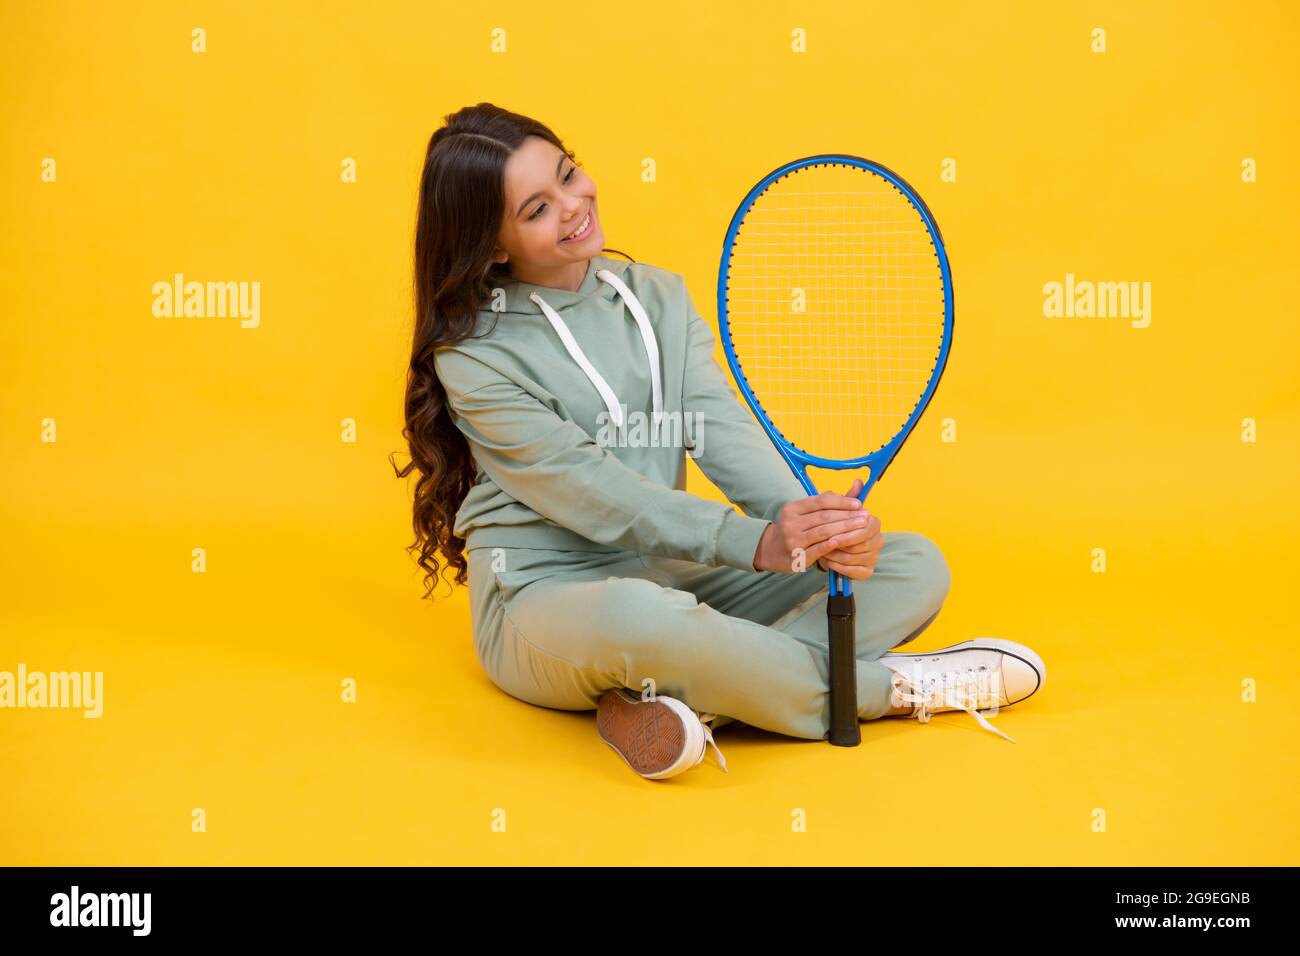 allegra ragazza teen in sportswear tenere racchetta tennis su sfondo giallo, sport Foto Stock